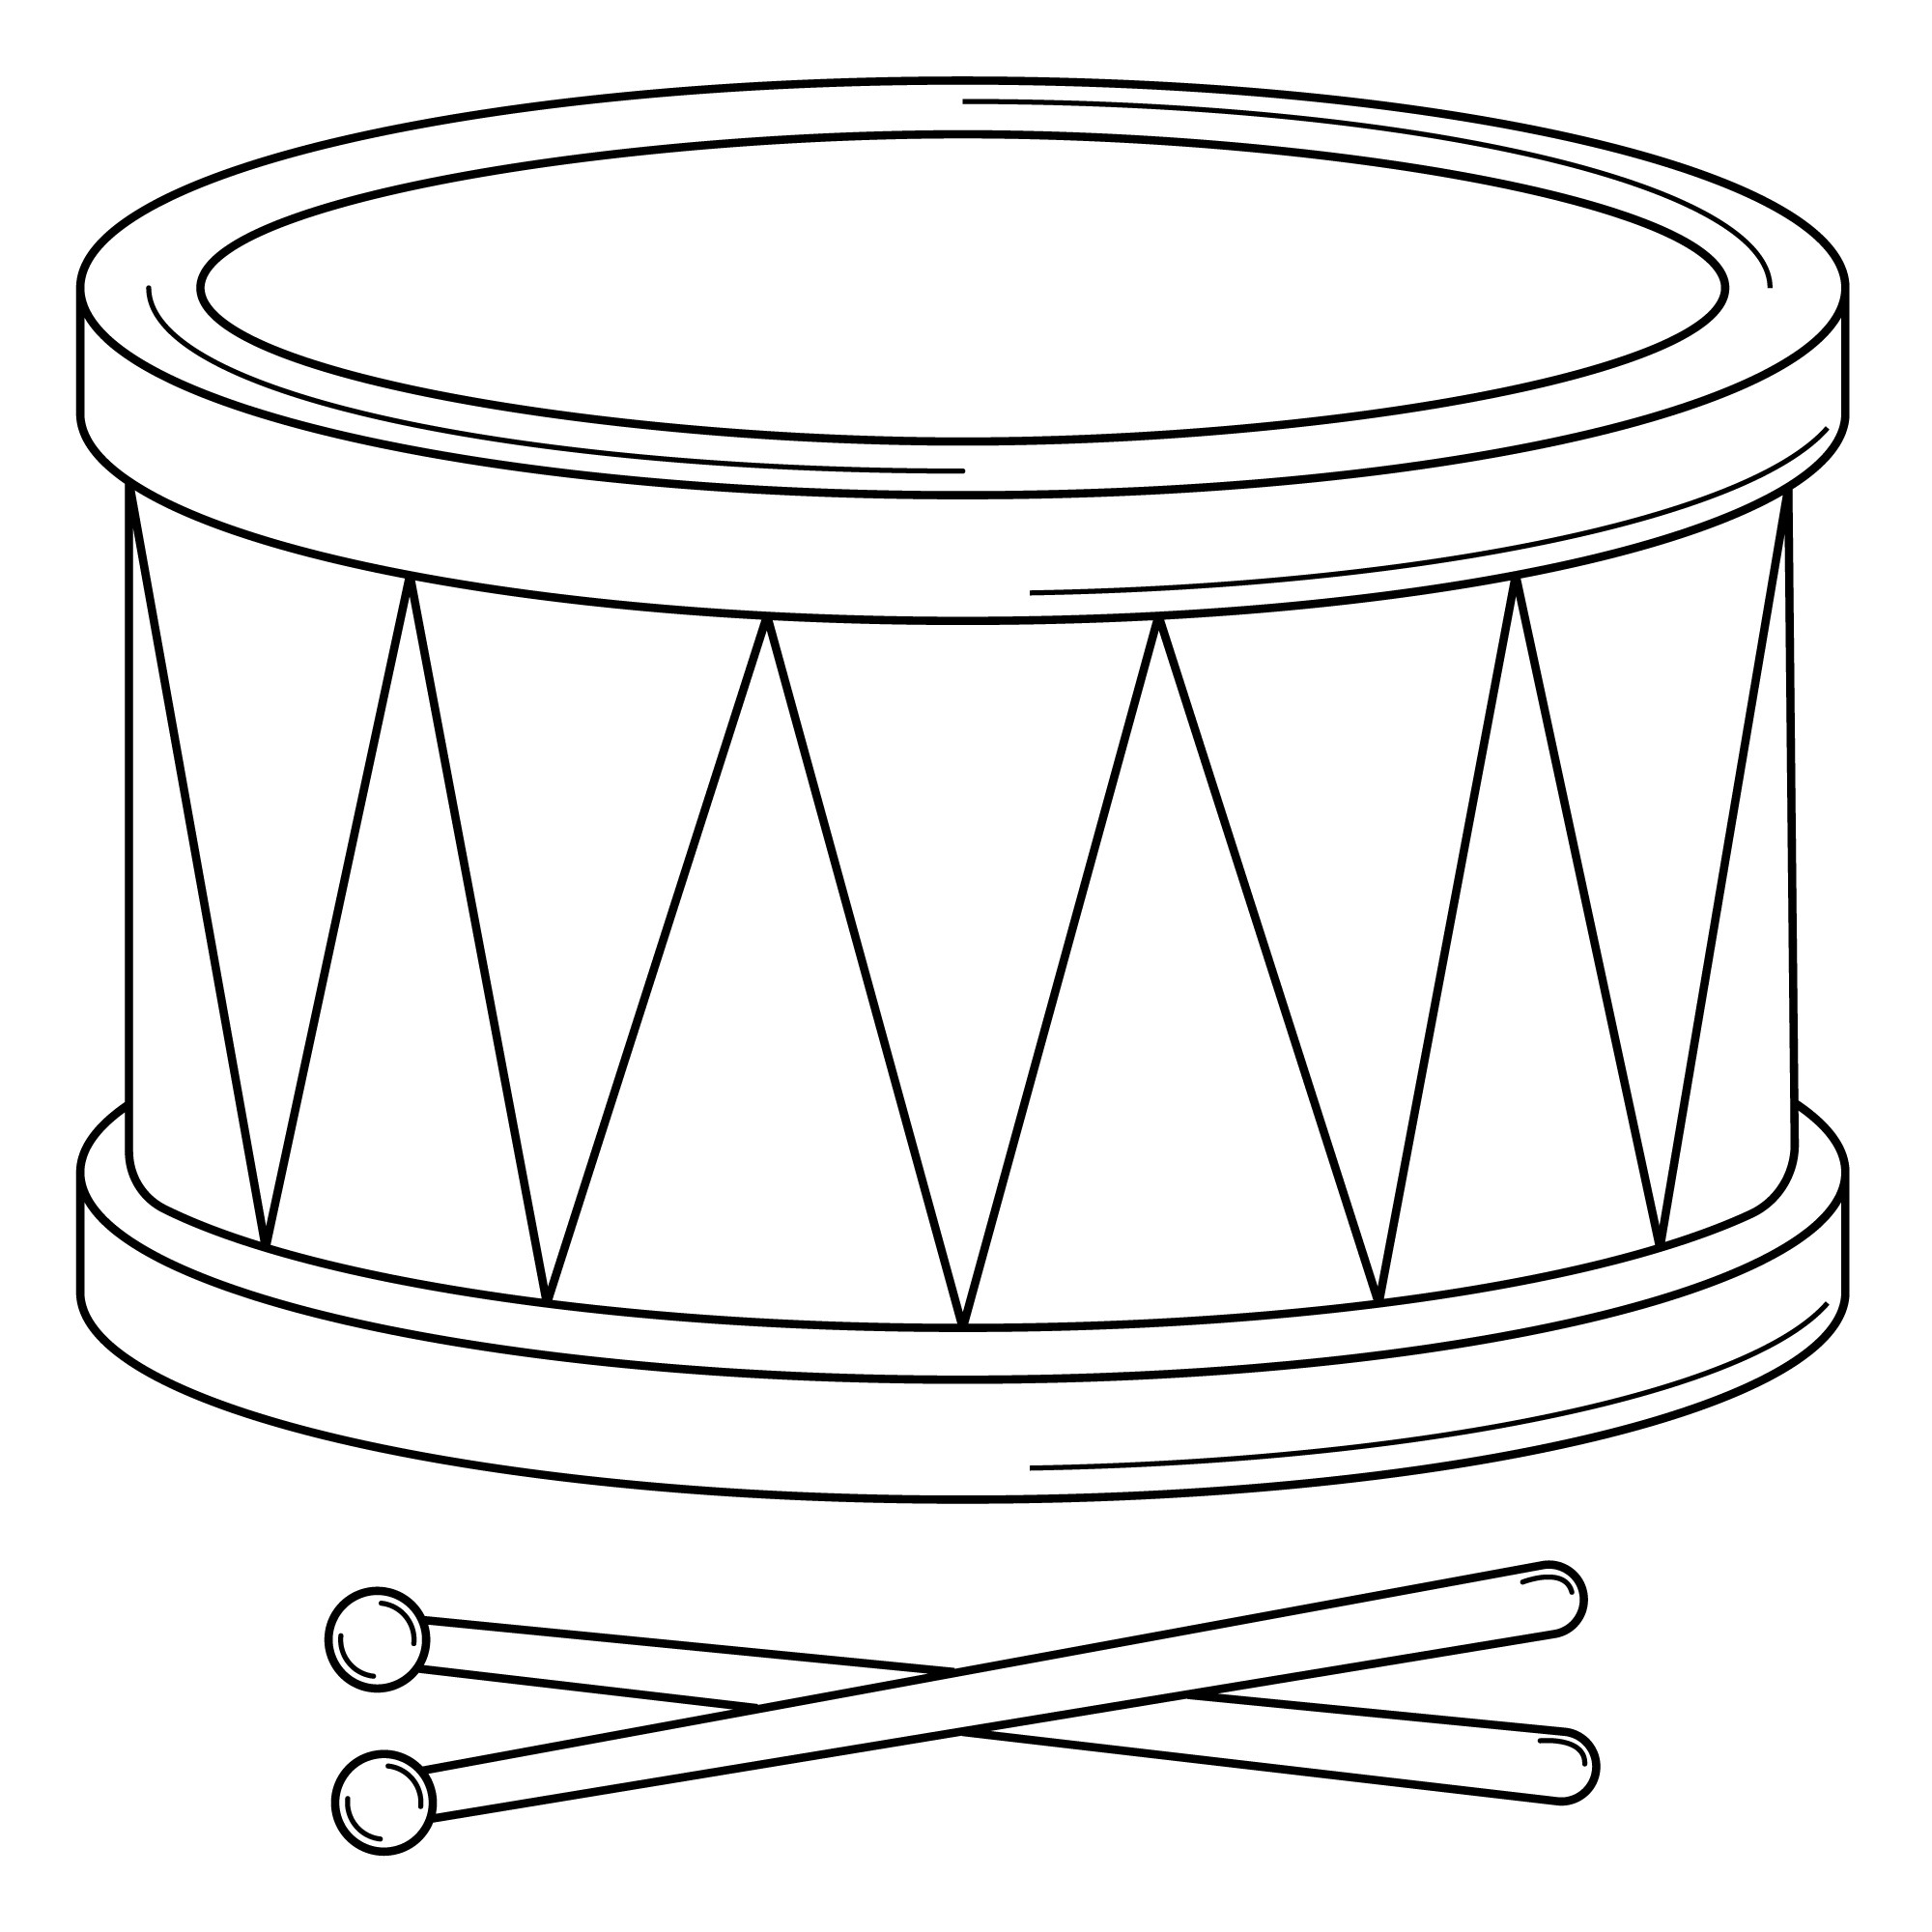 Раскраска для детей: игрушка барабан с барабанными палочками